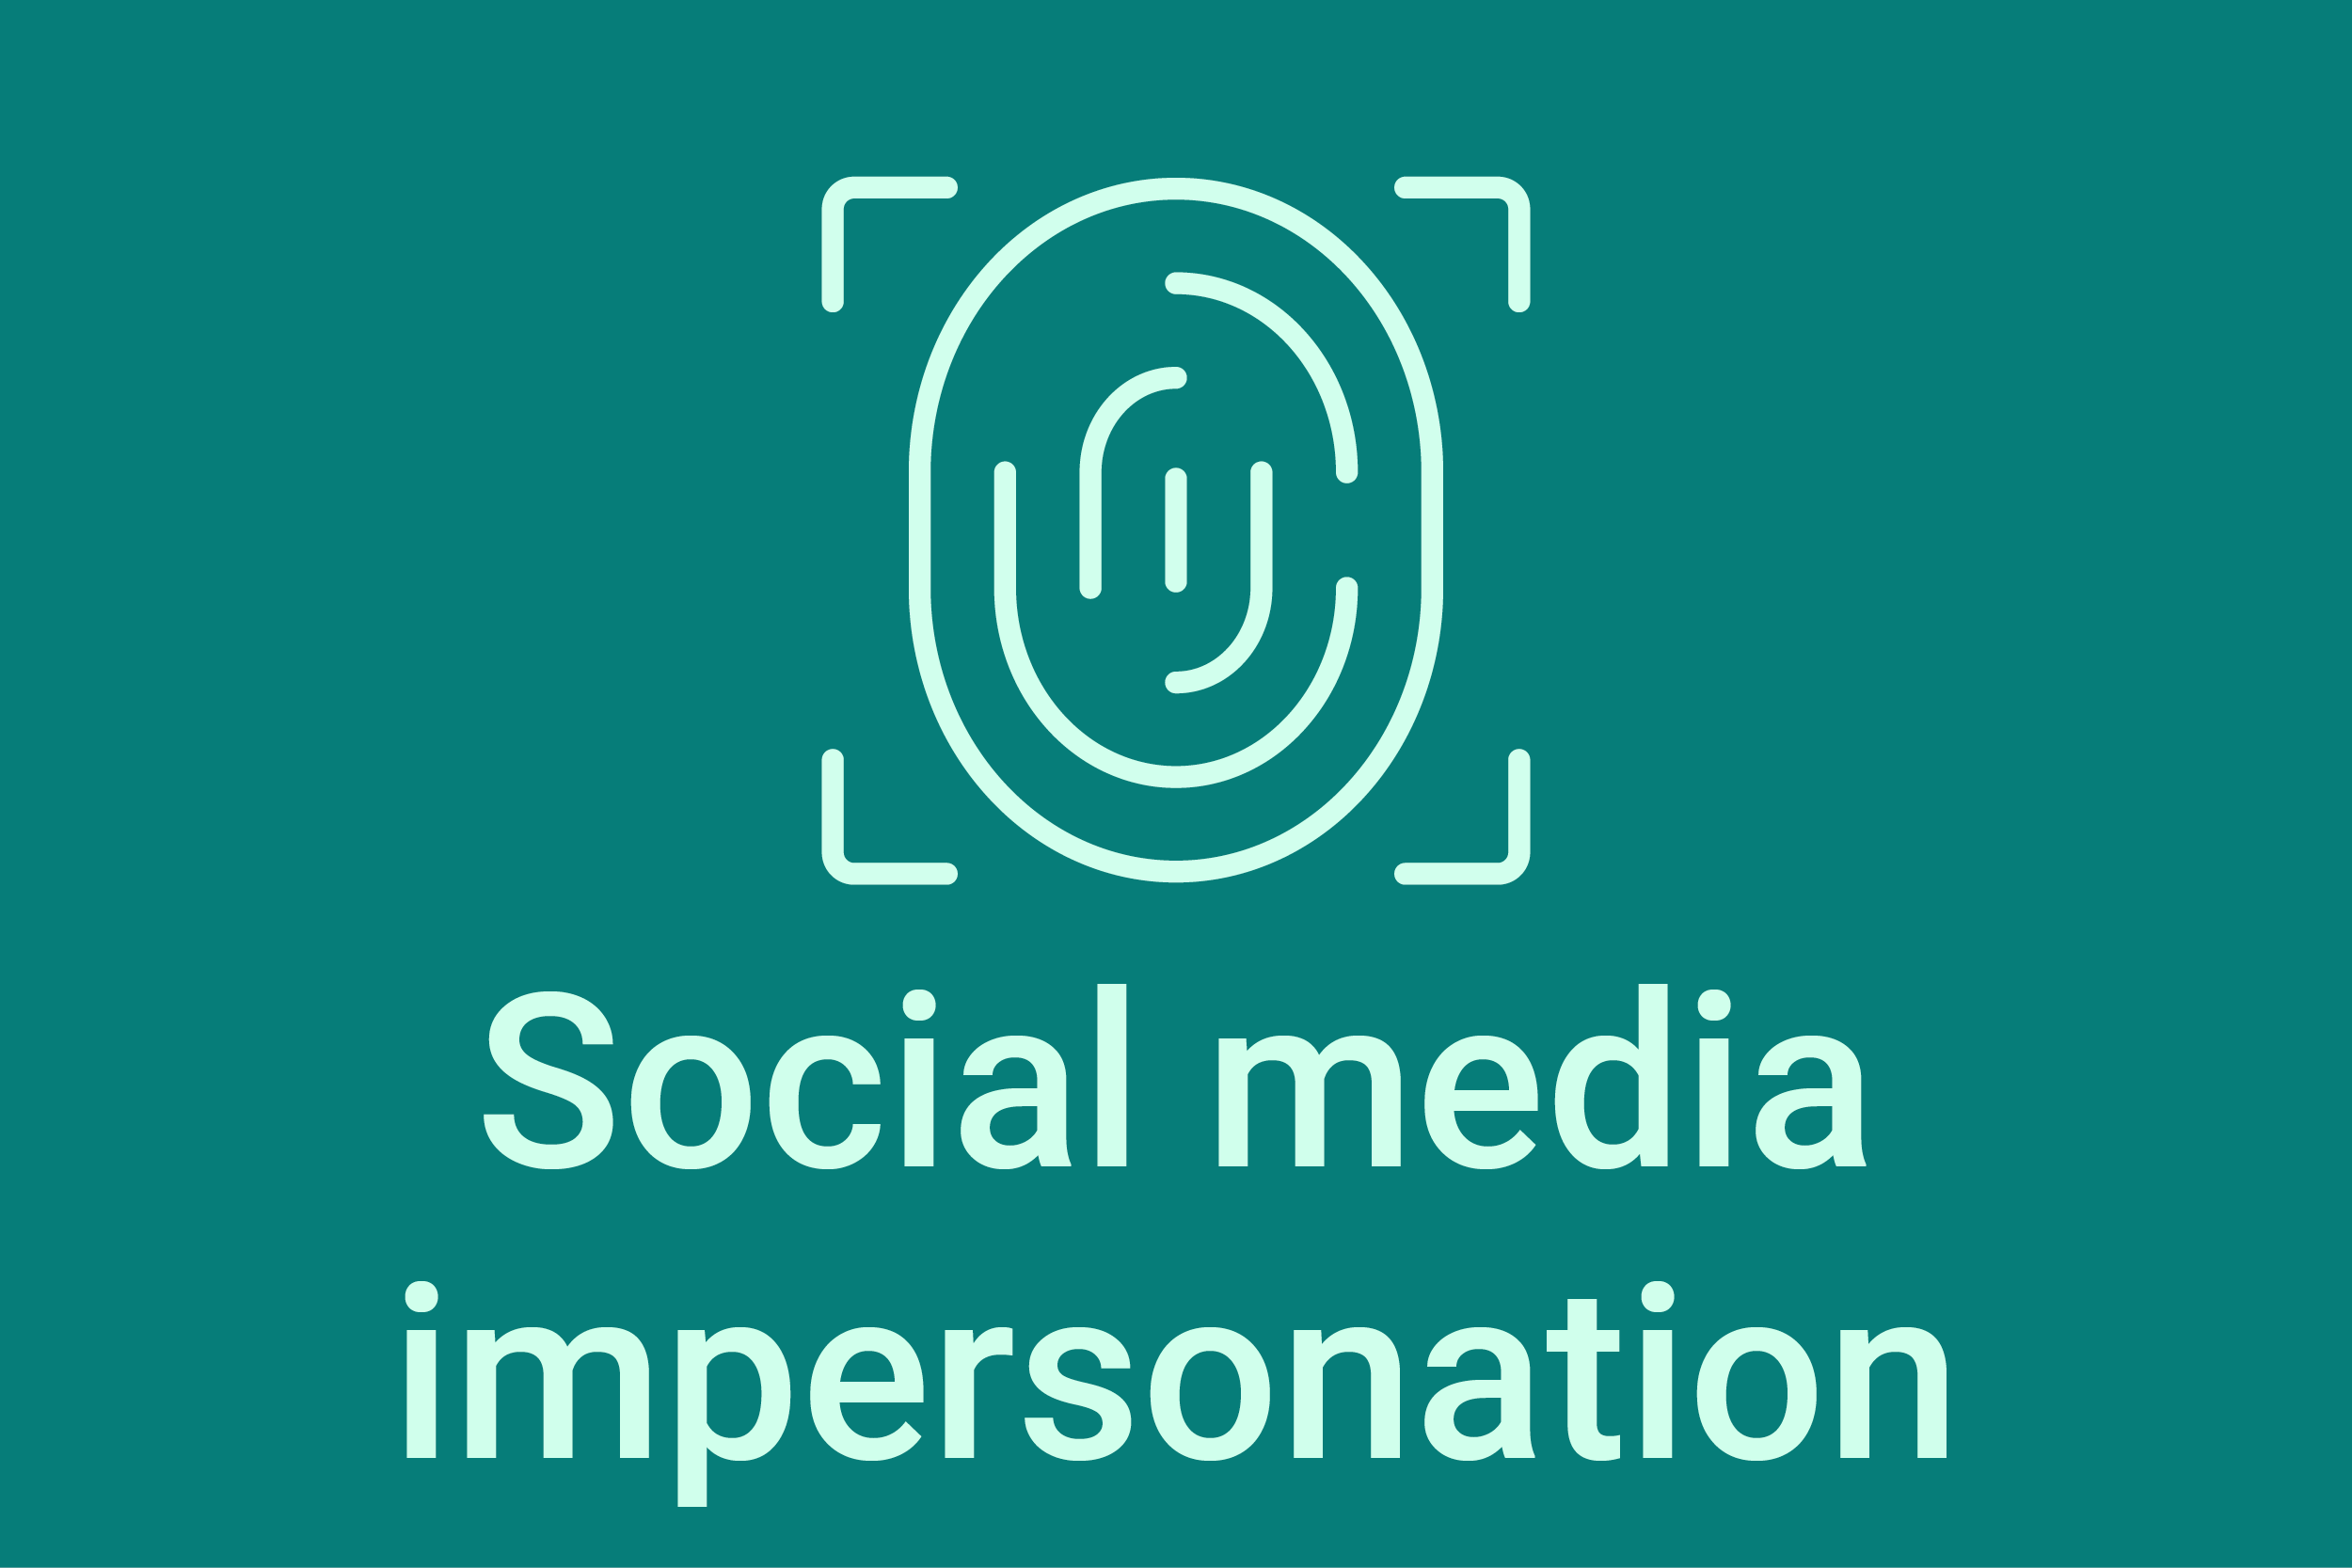 Social media impersonation